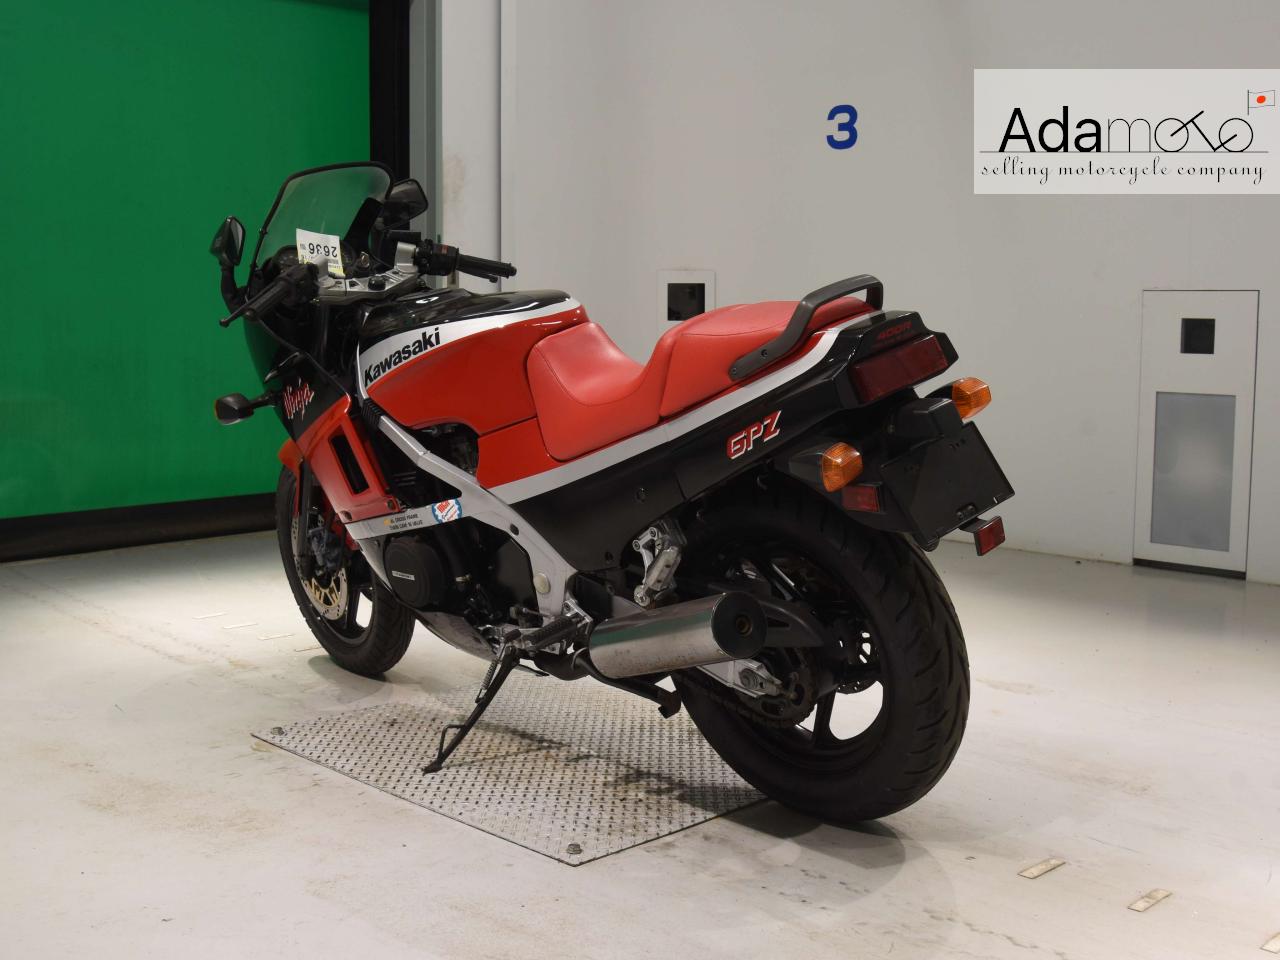 Kawasaki GPZ400R - Adamoto - Motorcycles from Japan